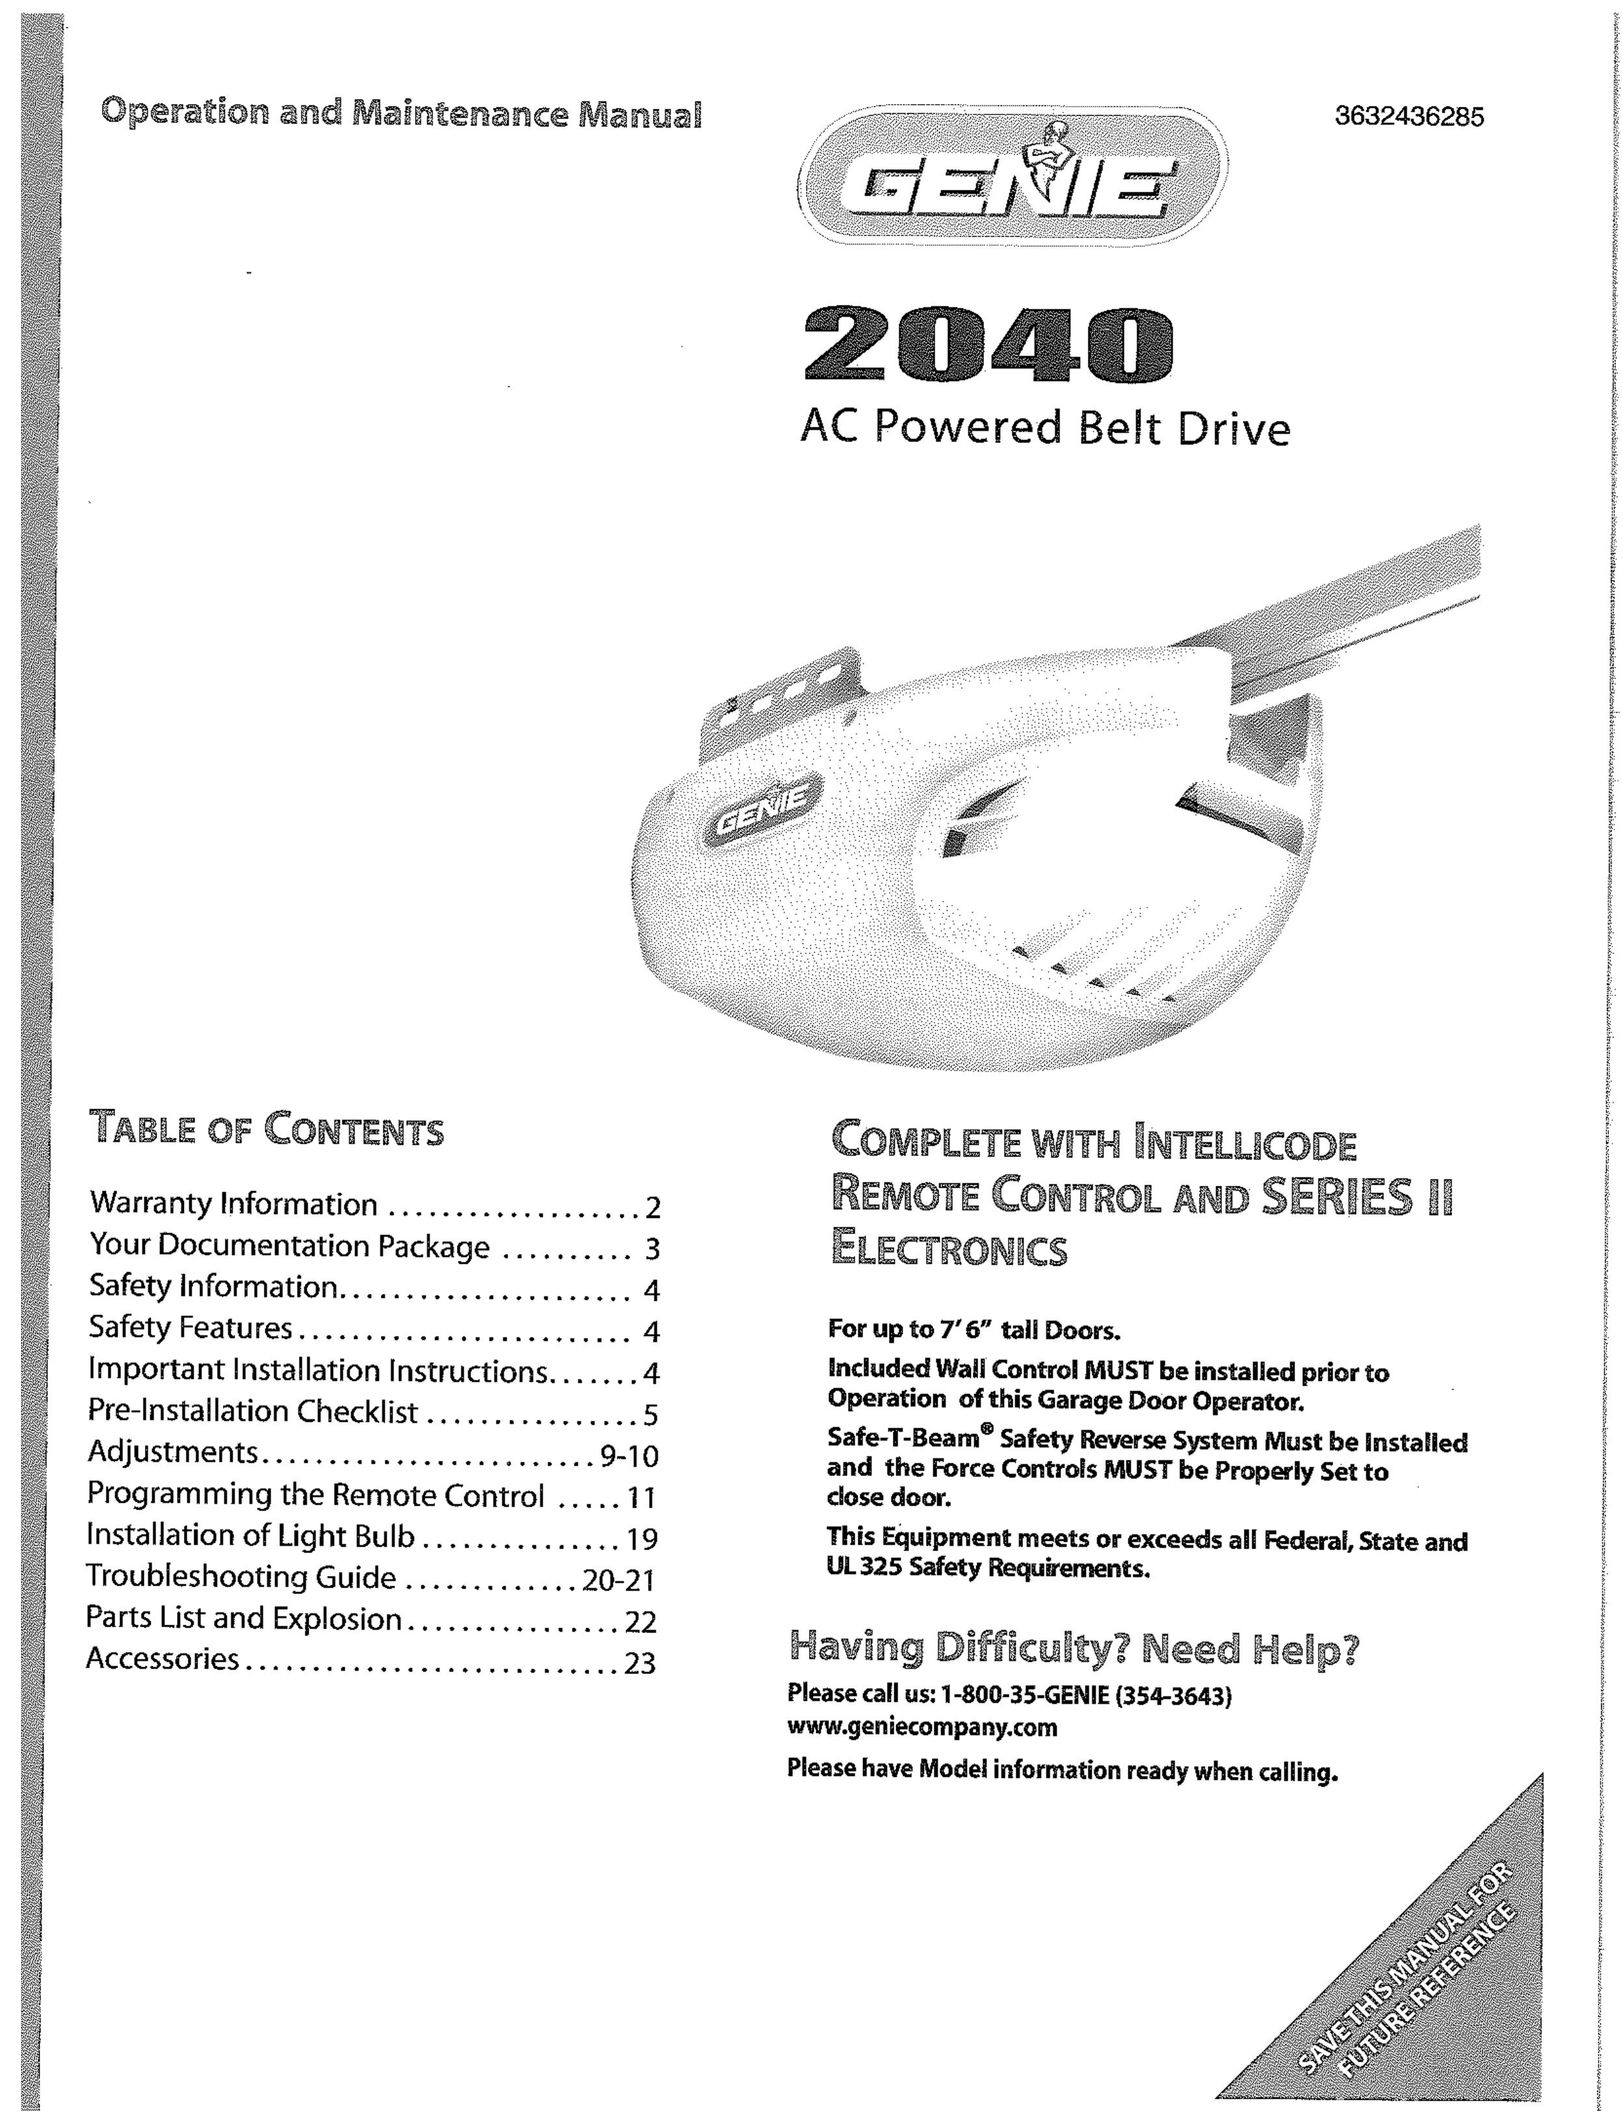 Genie 2040 Garage Door Opener User Manual